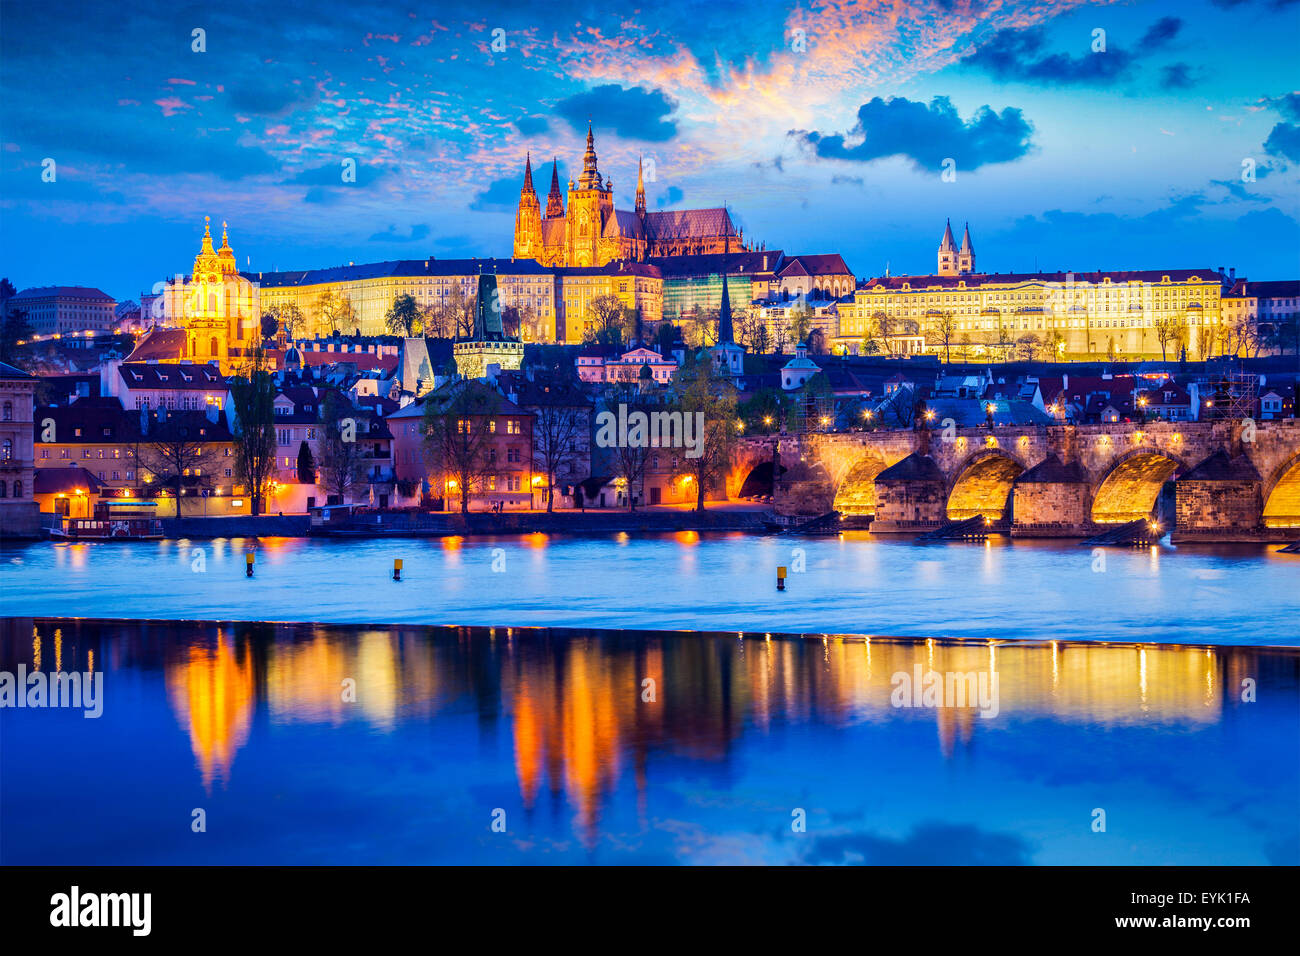 Reisen Prag Europa Hintergrund - Aussicht auf Prager Burg und St. Vitus Kathedrale in der Dämmerung mit dramatischen Himmel. Prag, Tschechien Stockfoto